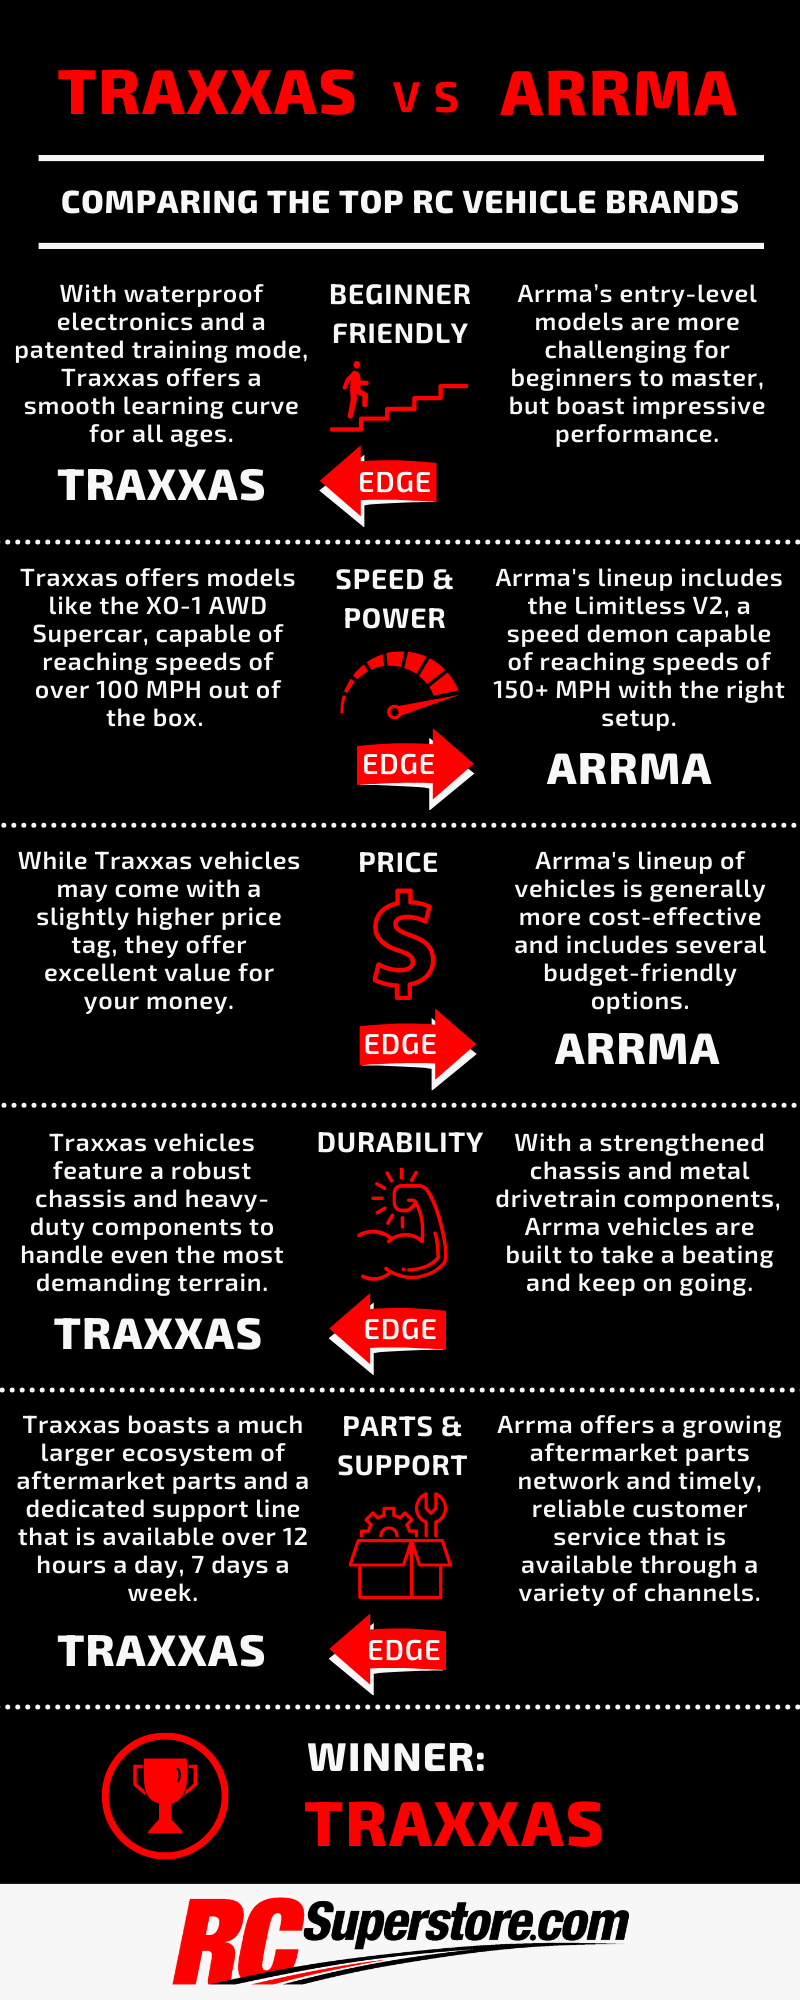 Traxxas vs. Arrma comparison infographic